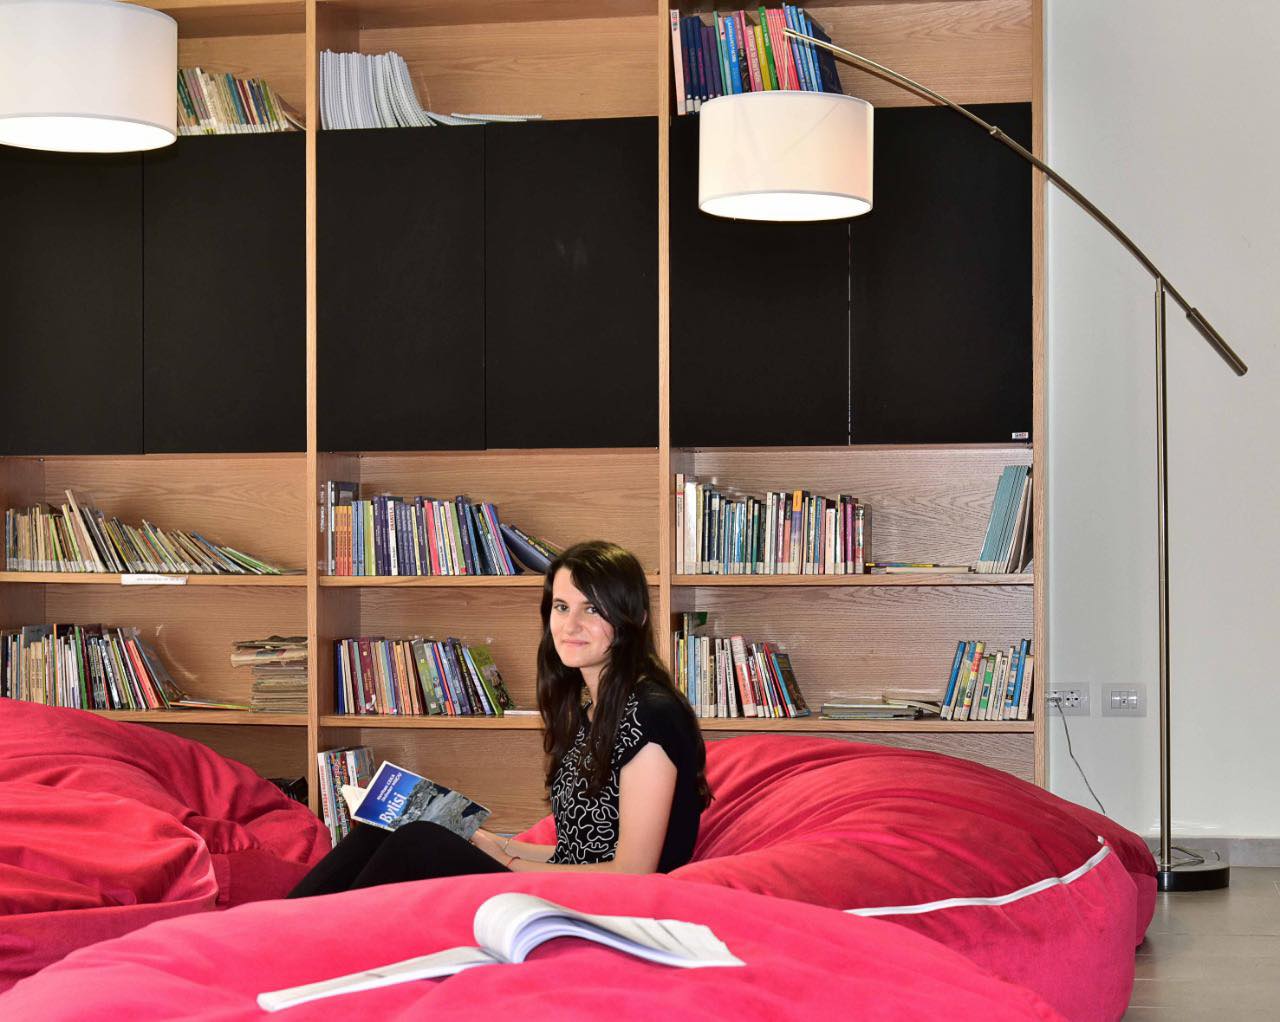 Bibliotekat publike, trendi më i ri i qytetarëve të Tiranës